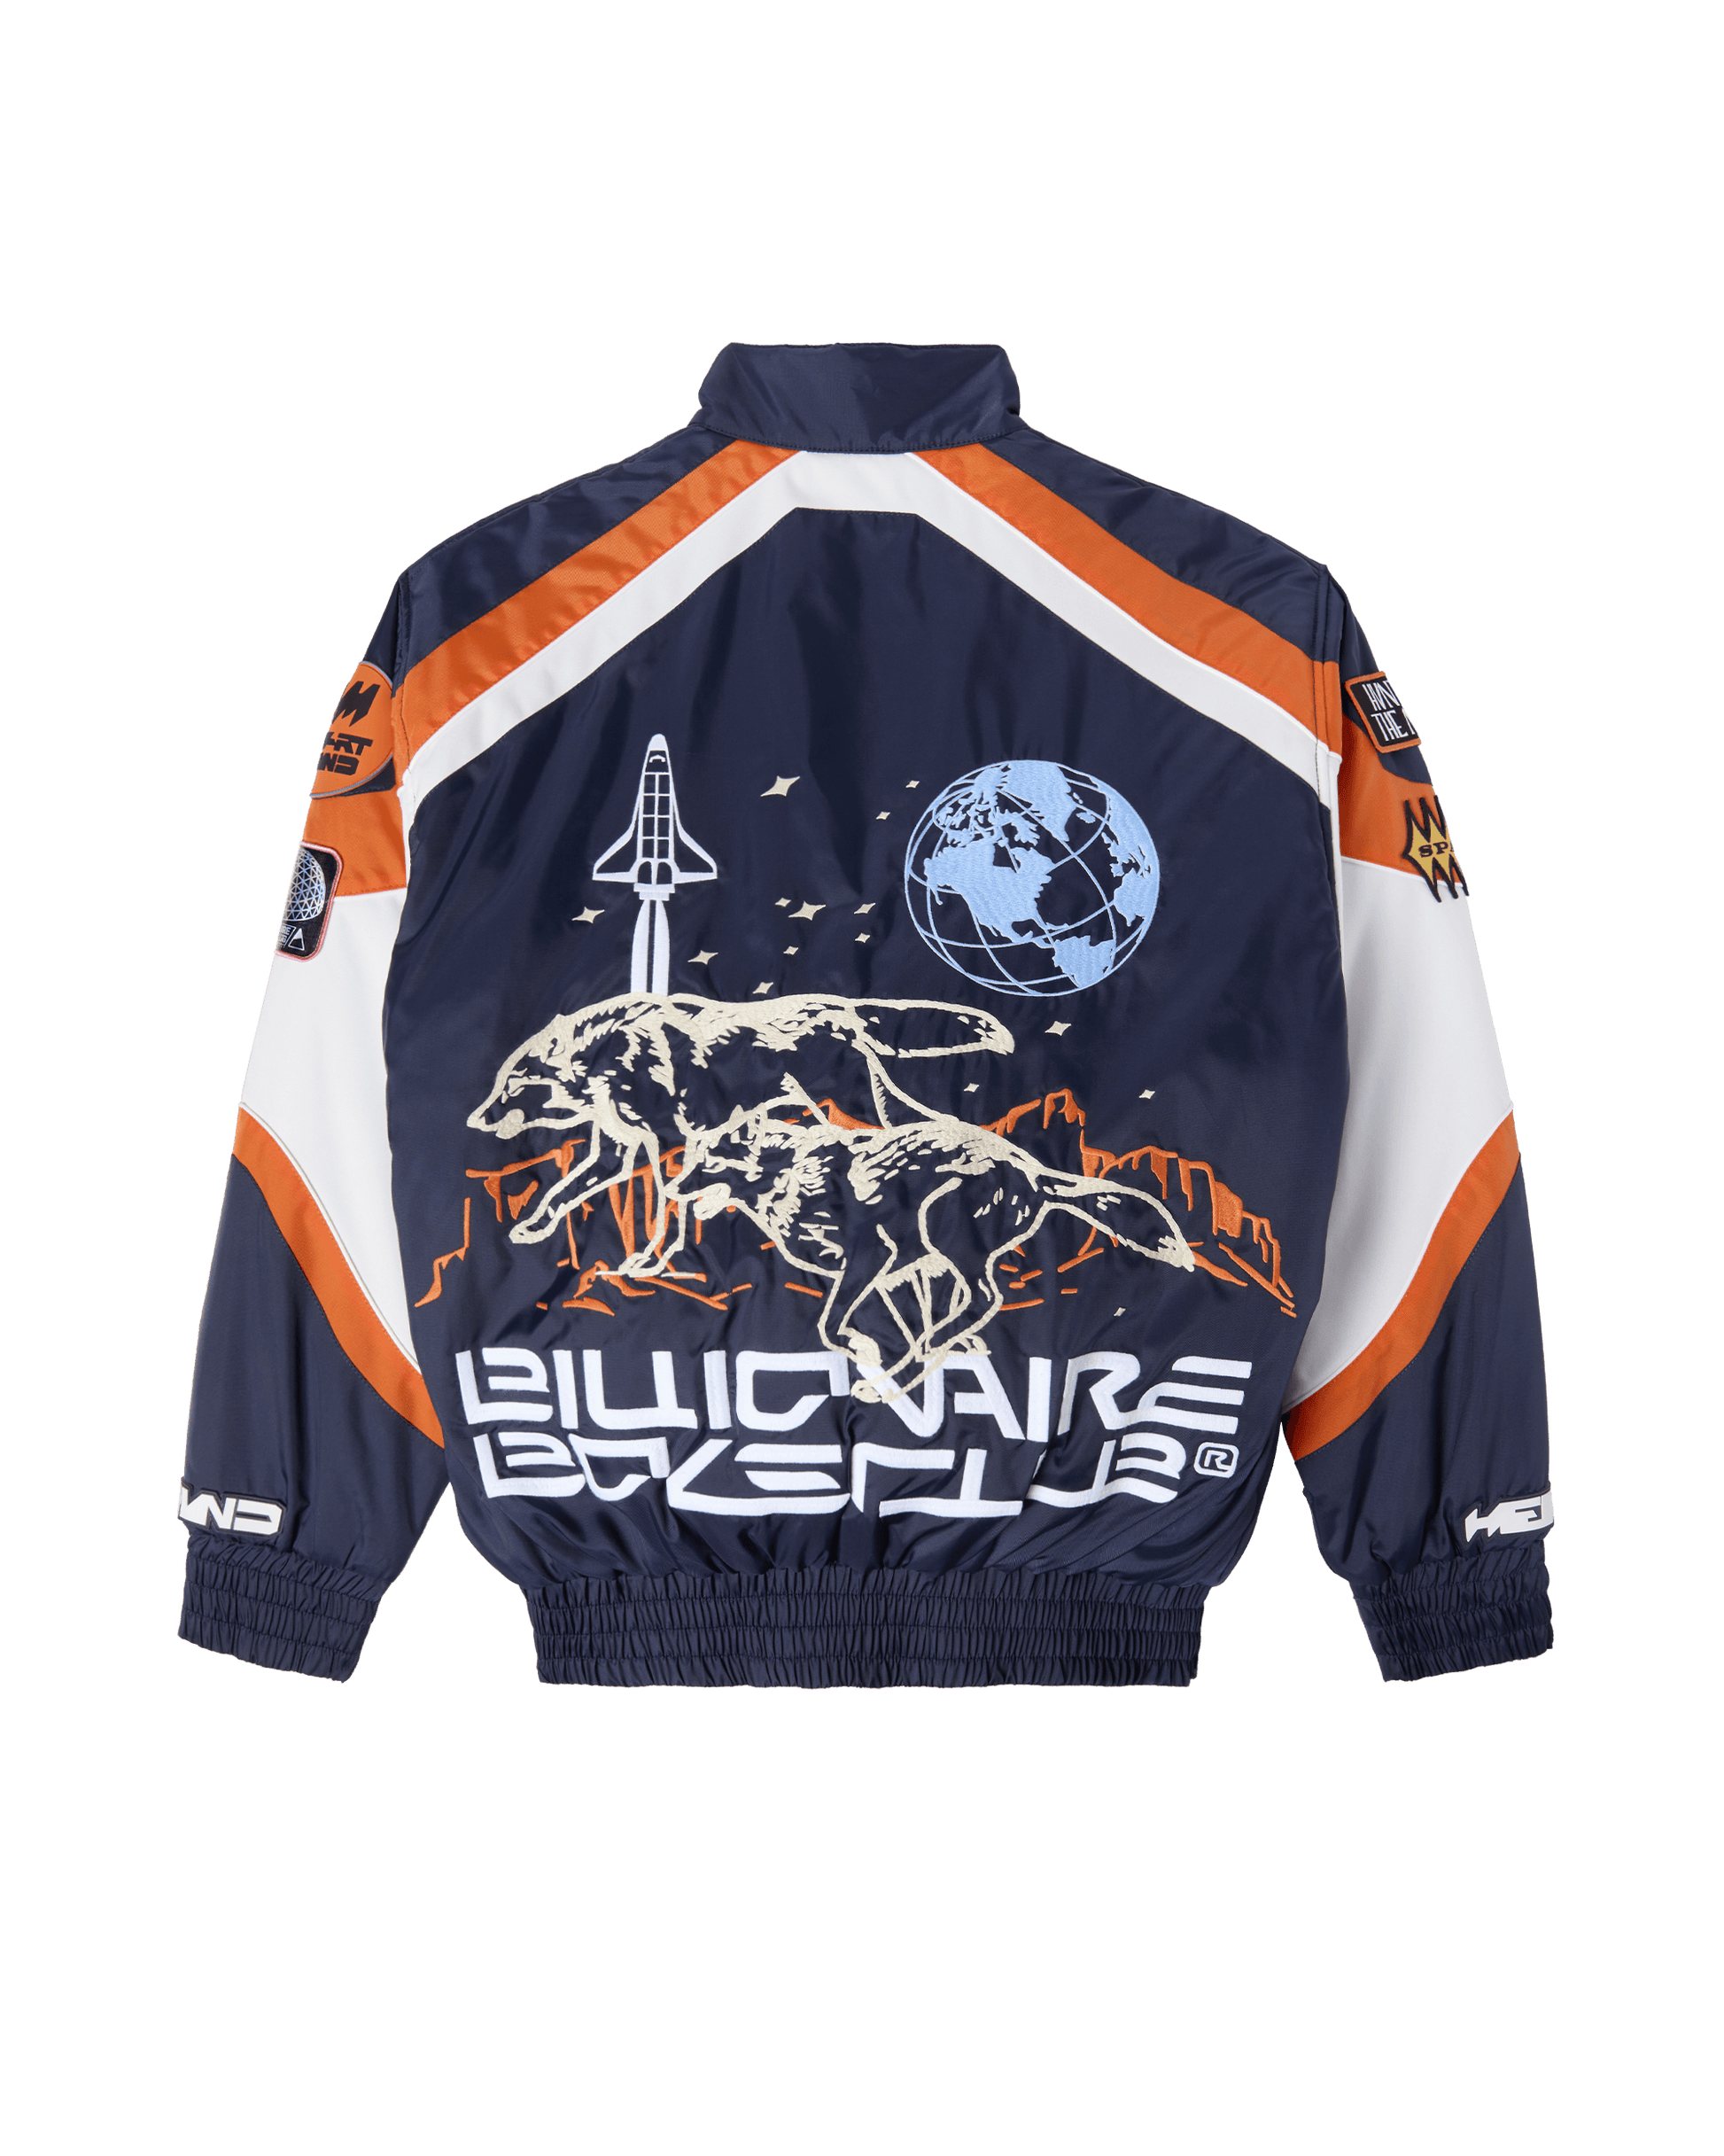 Space Suit Jacket - Billionaire Boys Club